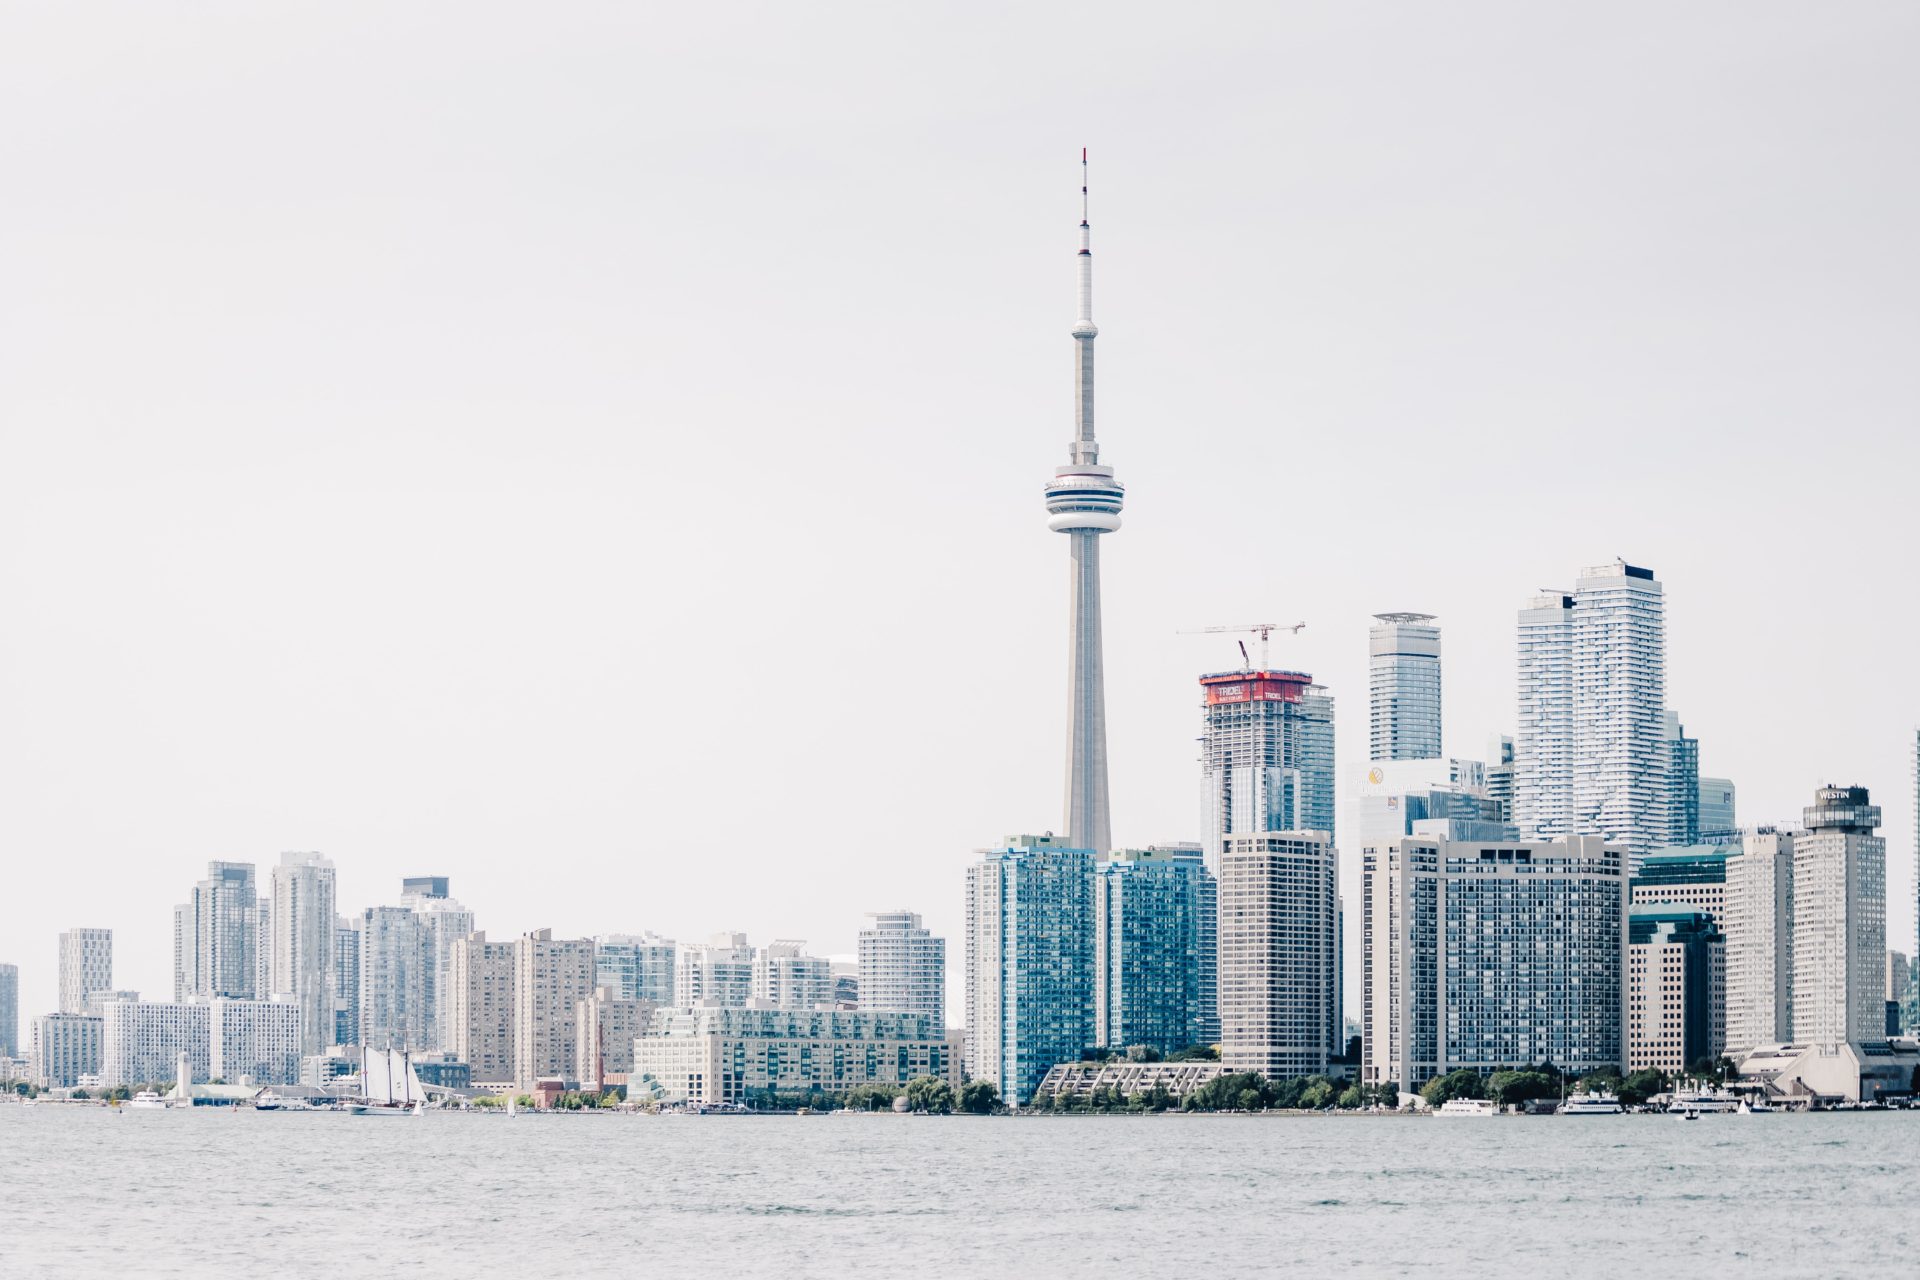 City of Toronto Skyline. Scott Webb via Unsplash